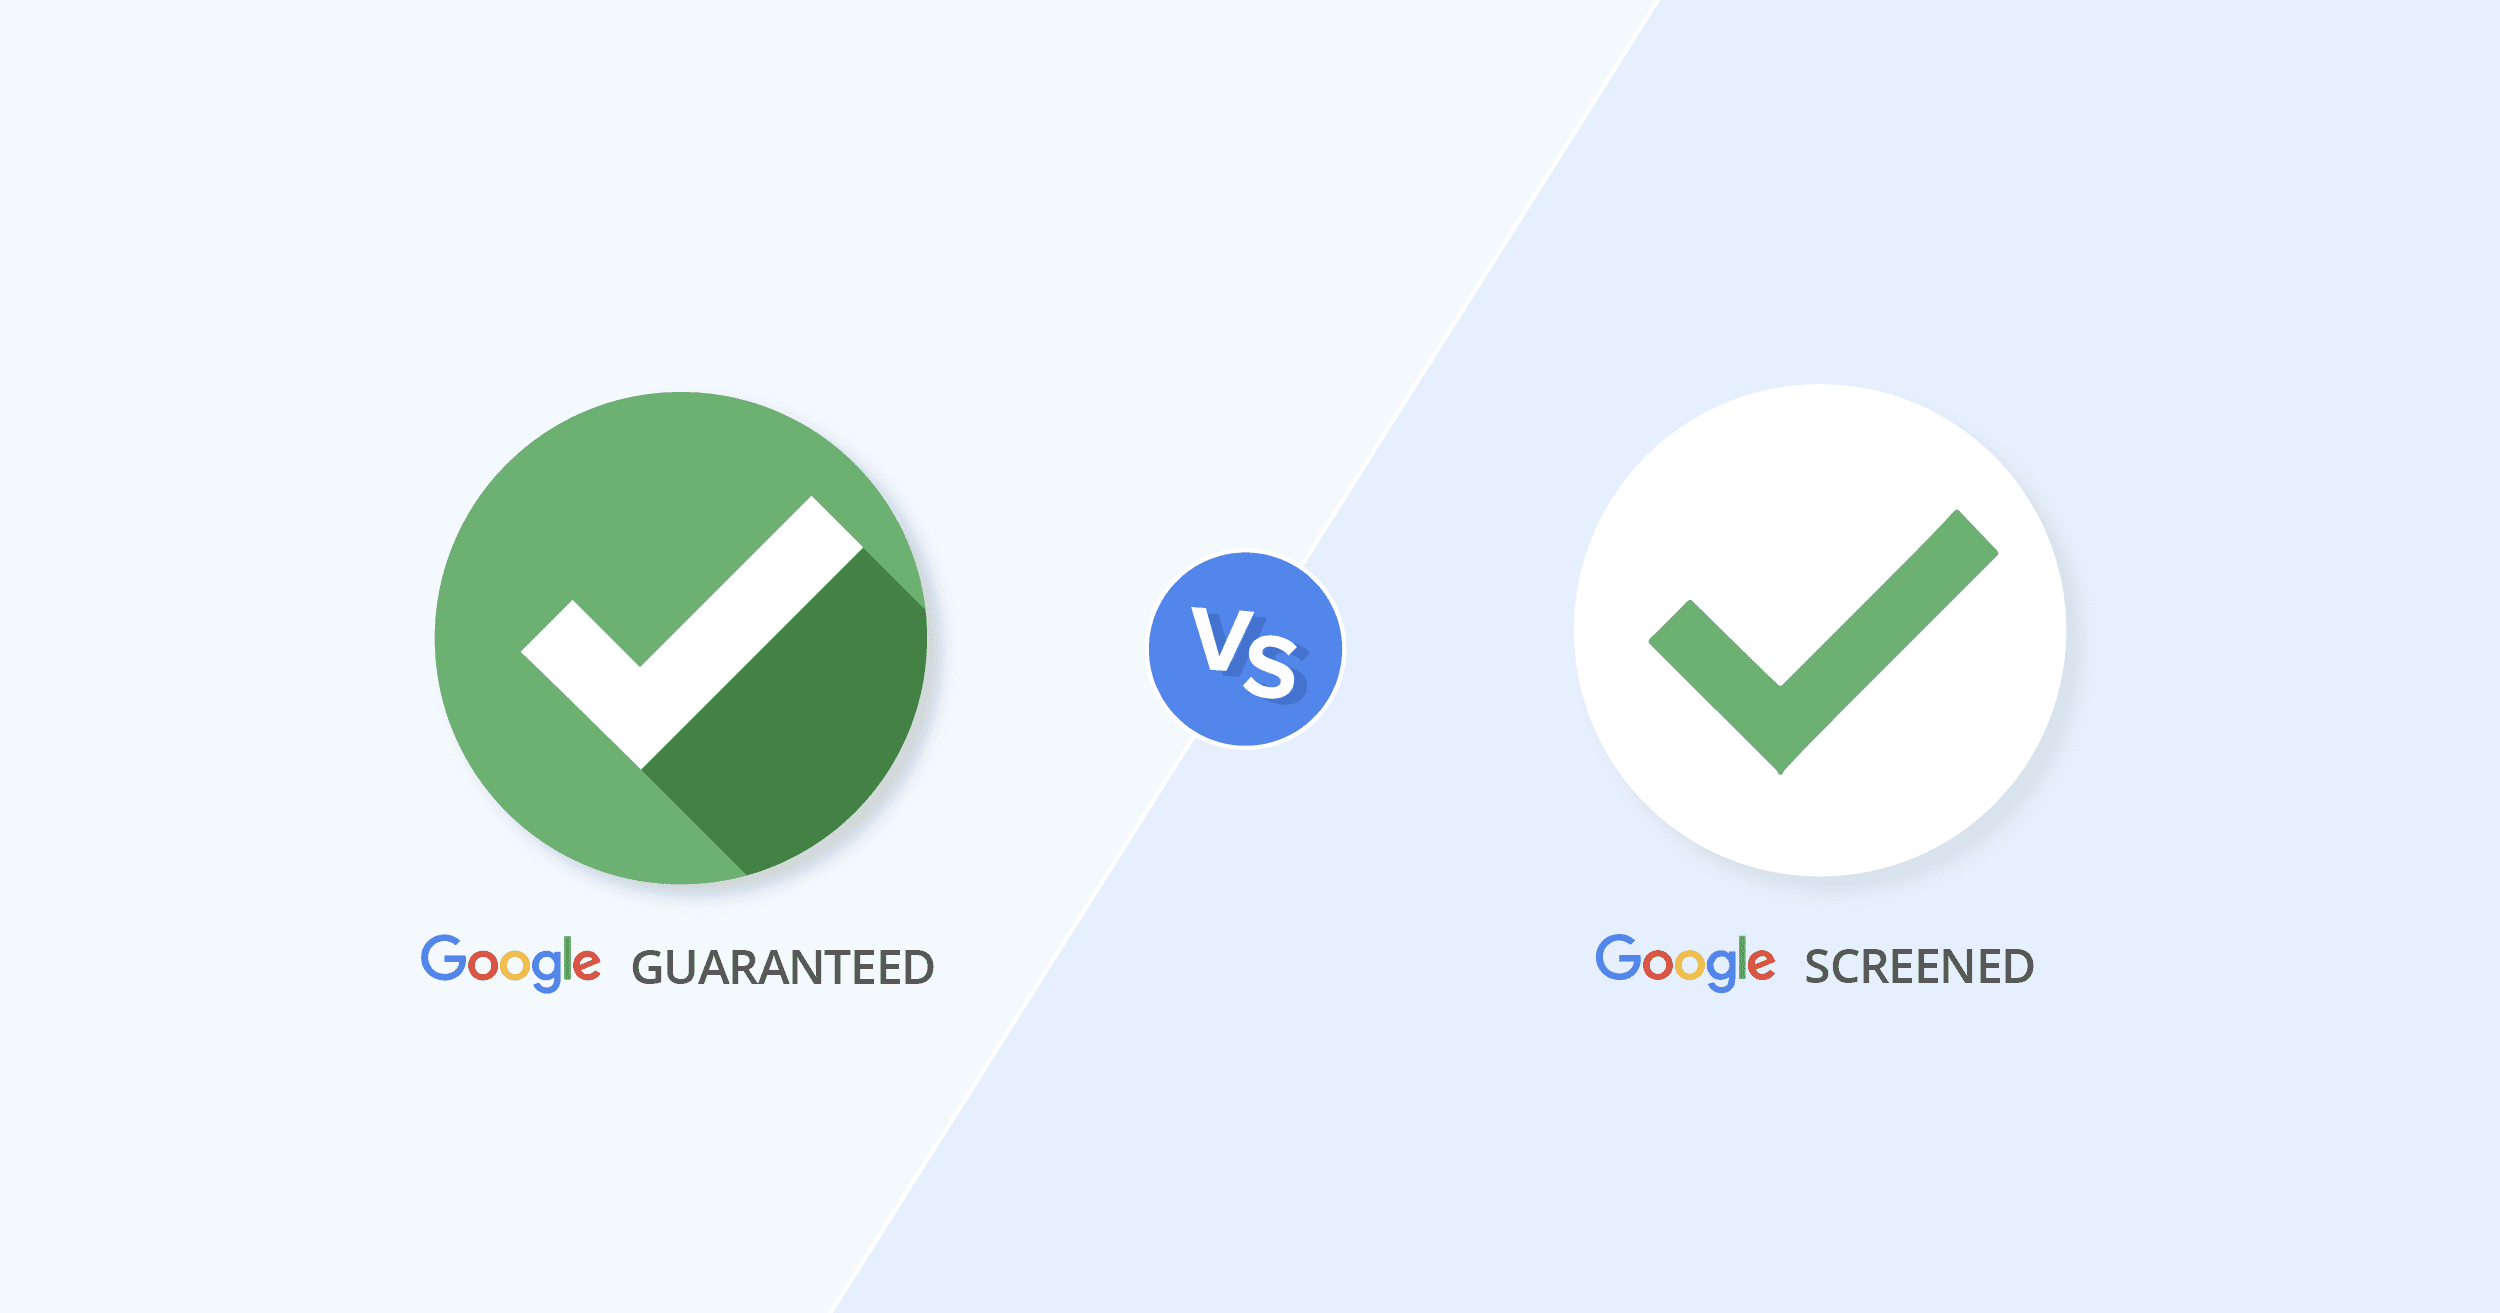 Google Guaranteed vs Google Screened